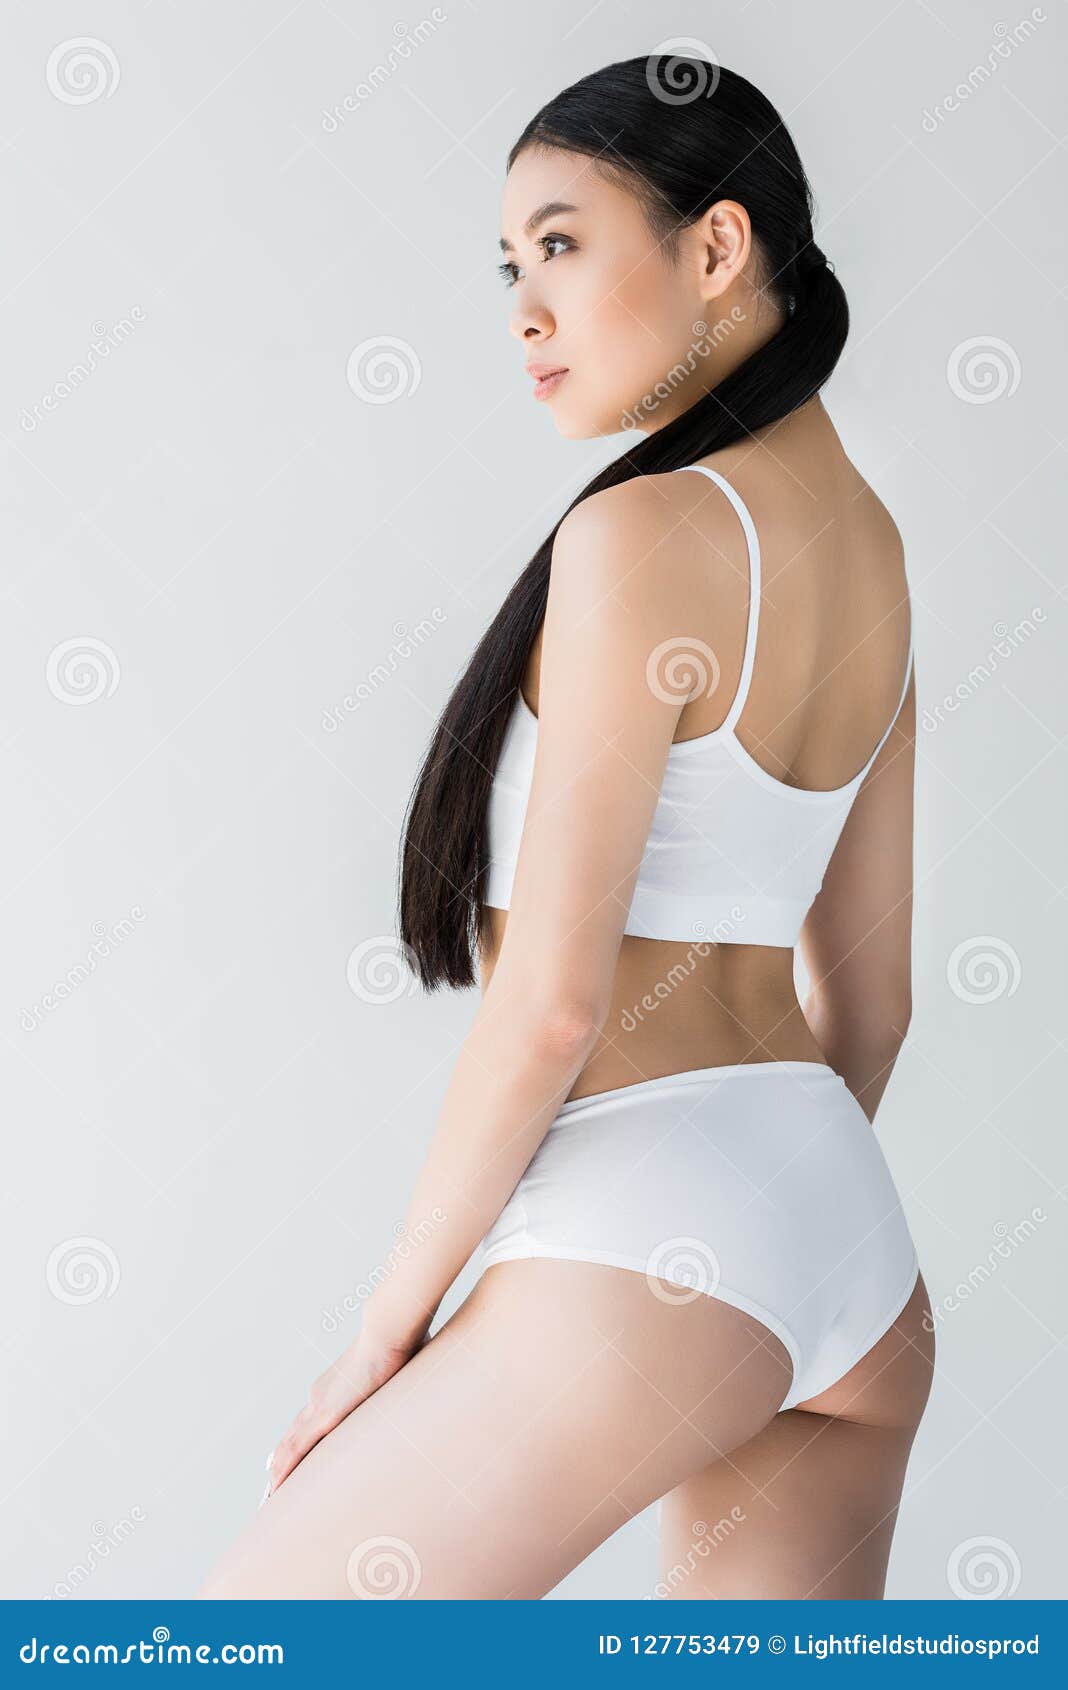 Asian girls lingerie photos